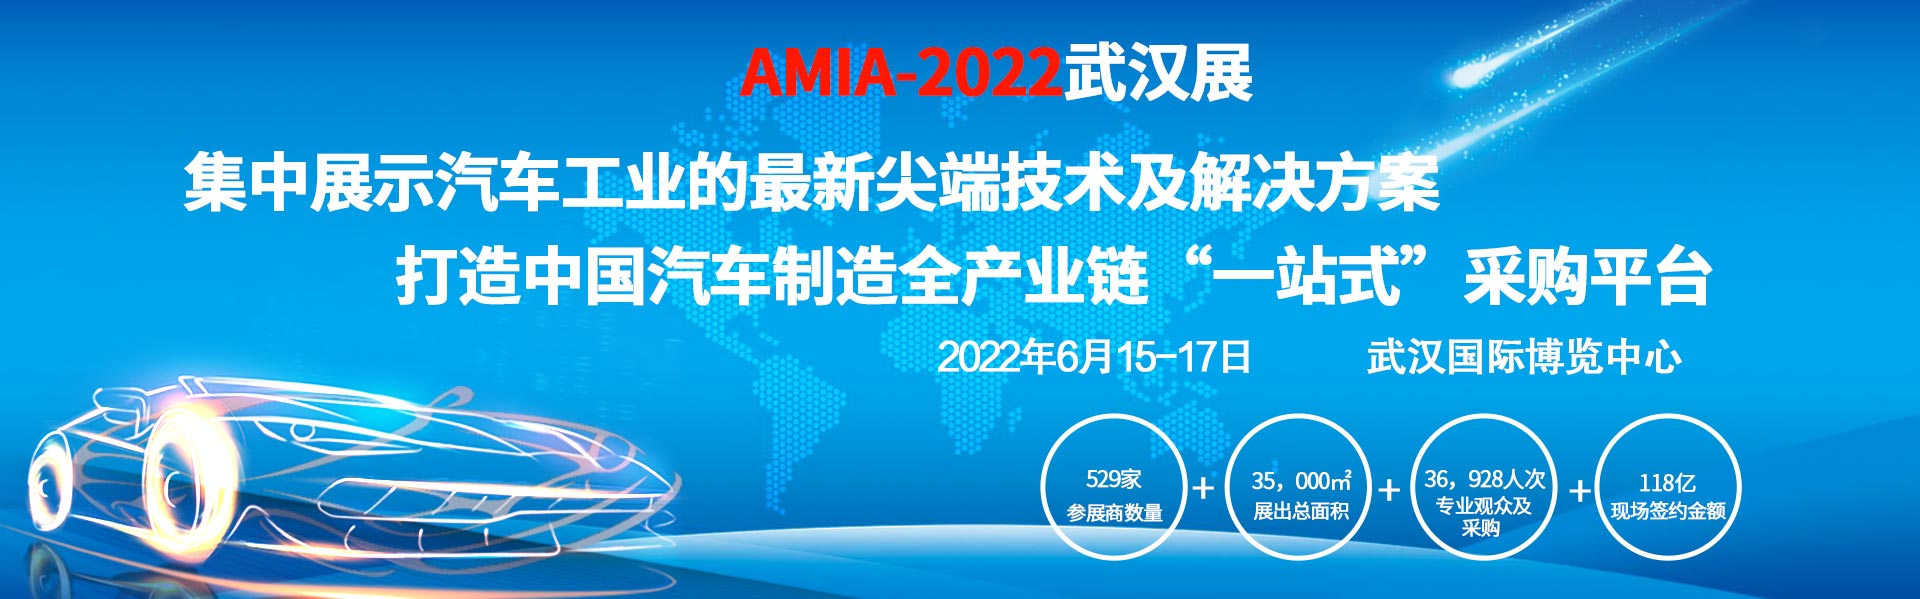 [武汉展会动态]2022武汉国际汽车制造技术暨智能装备博览会